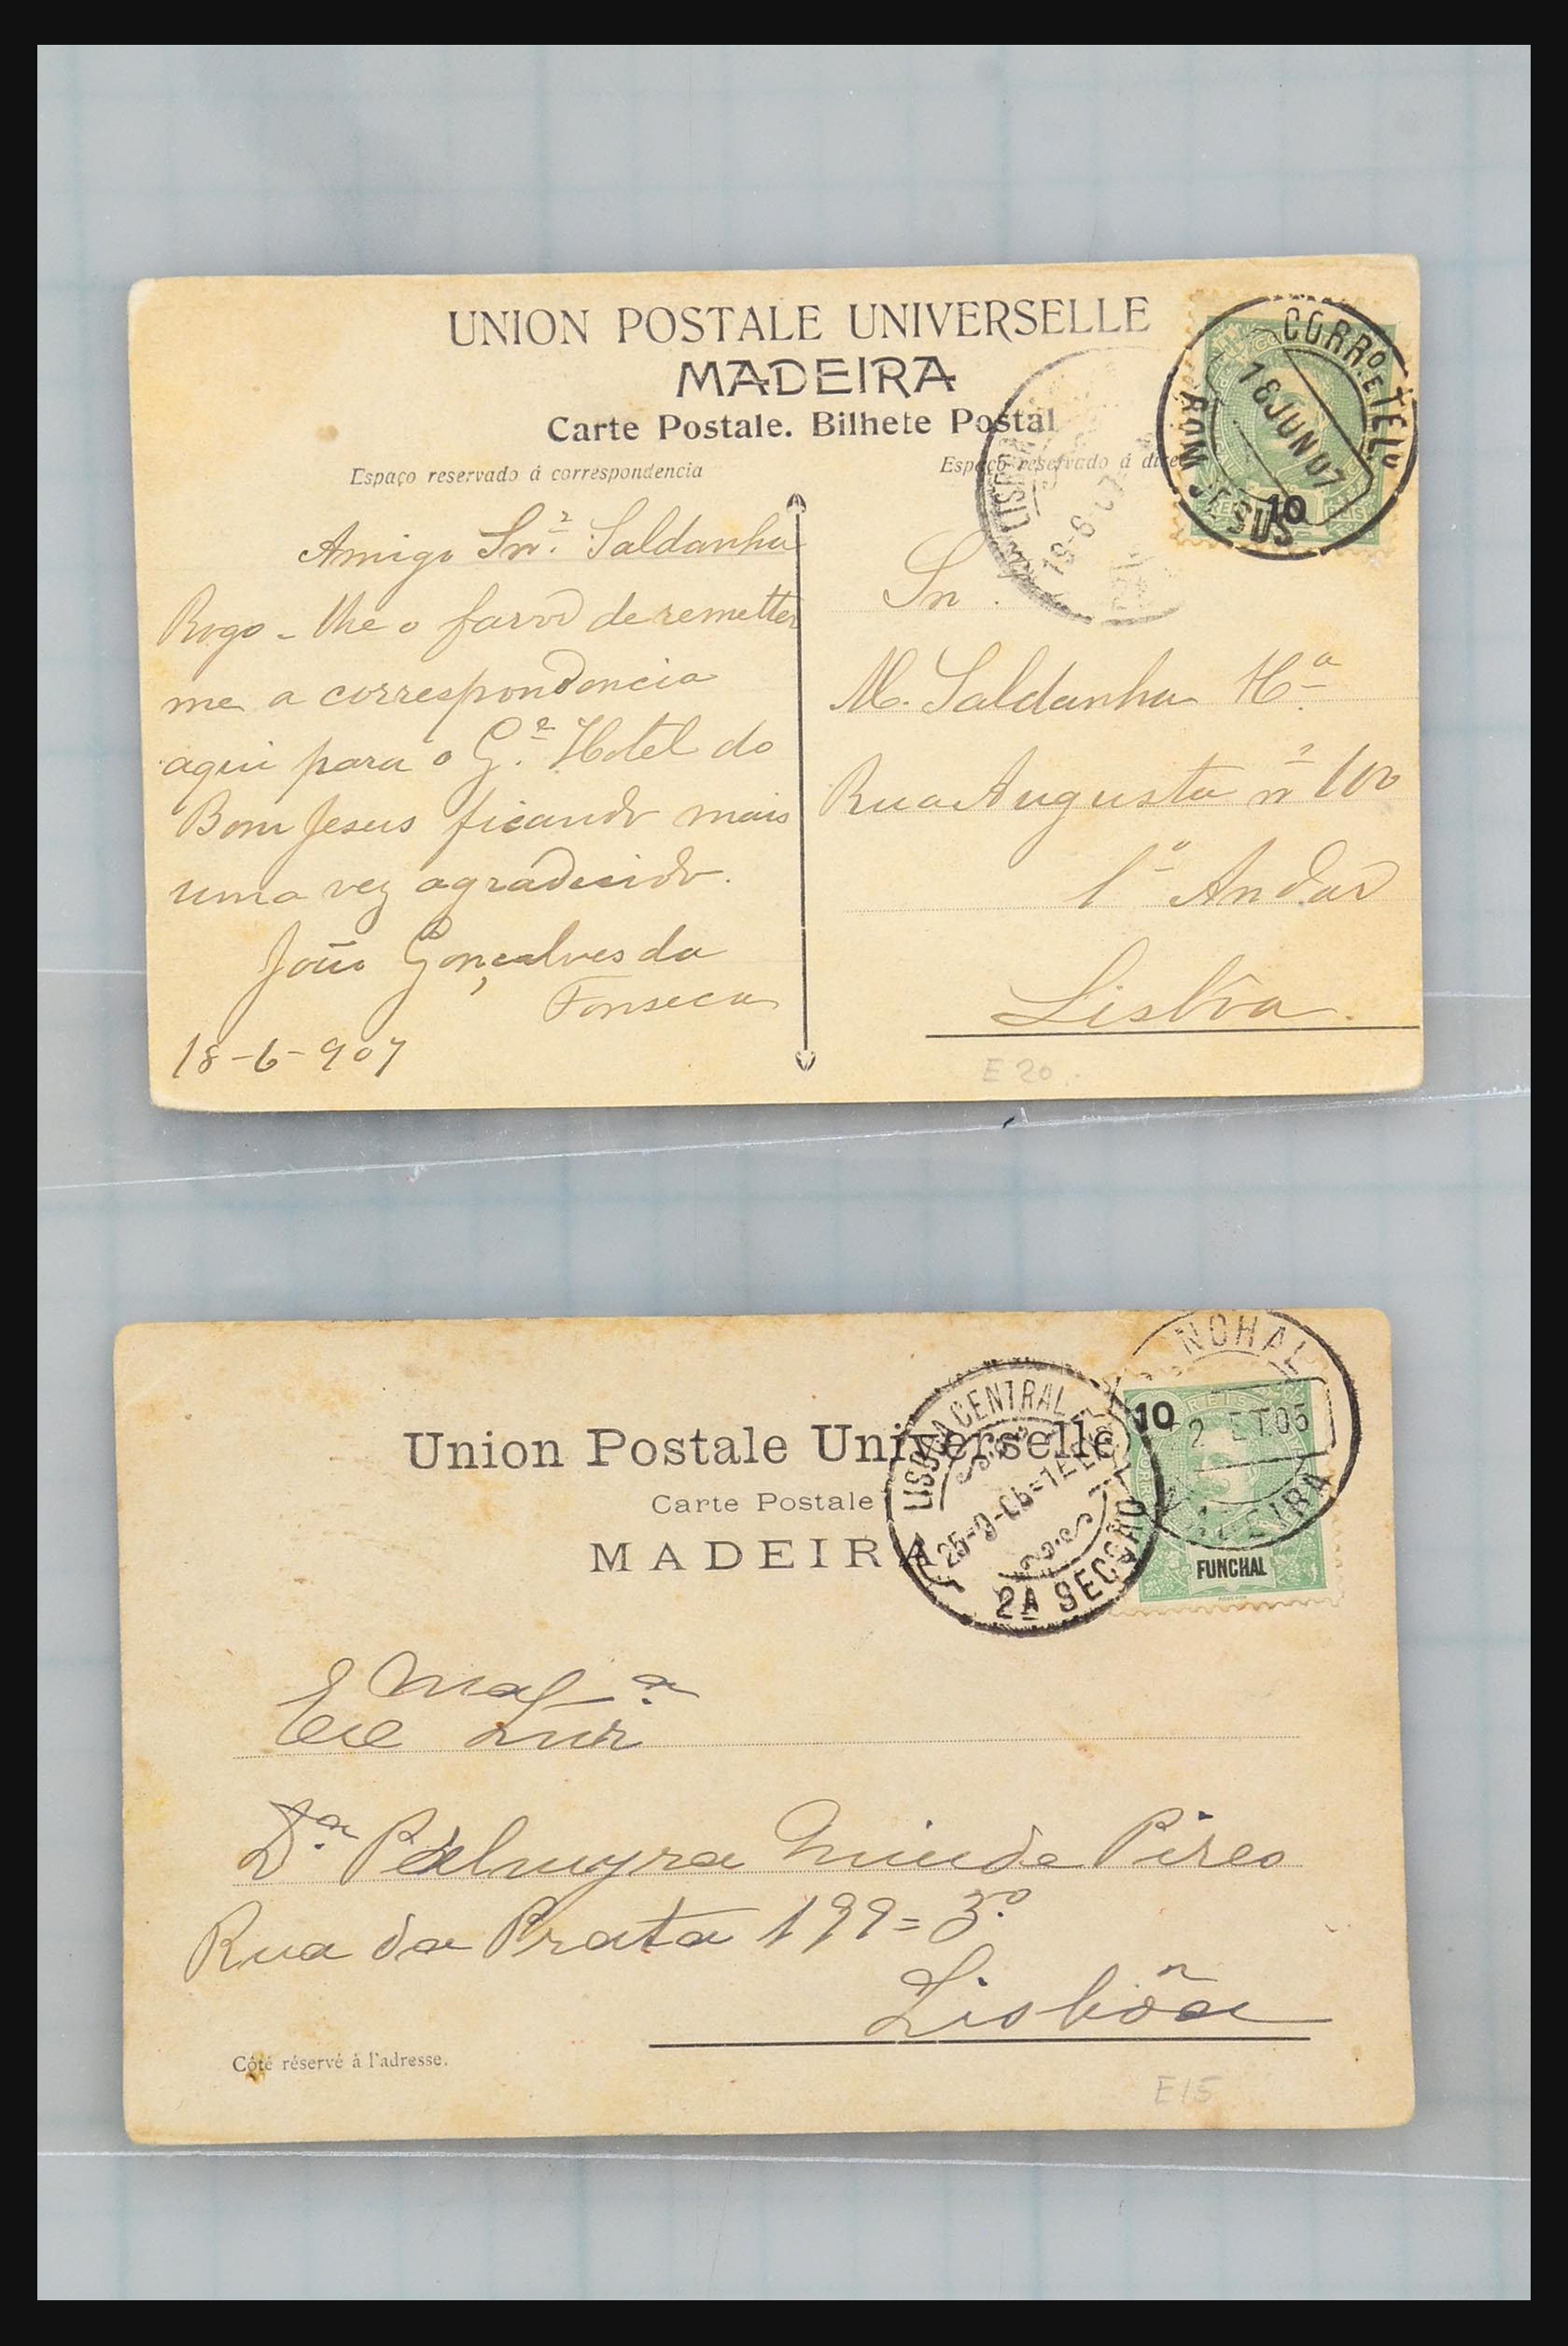 31358 243 - 31358 Portugal/Luxemburg/Griekenland brieven 1880-1960.